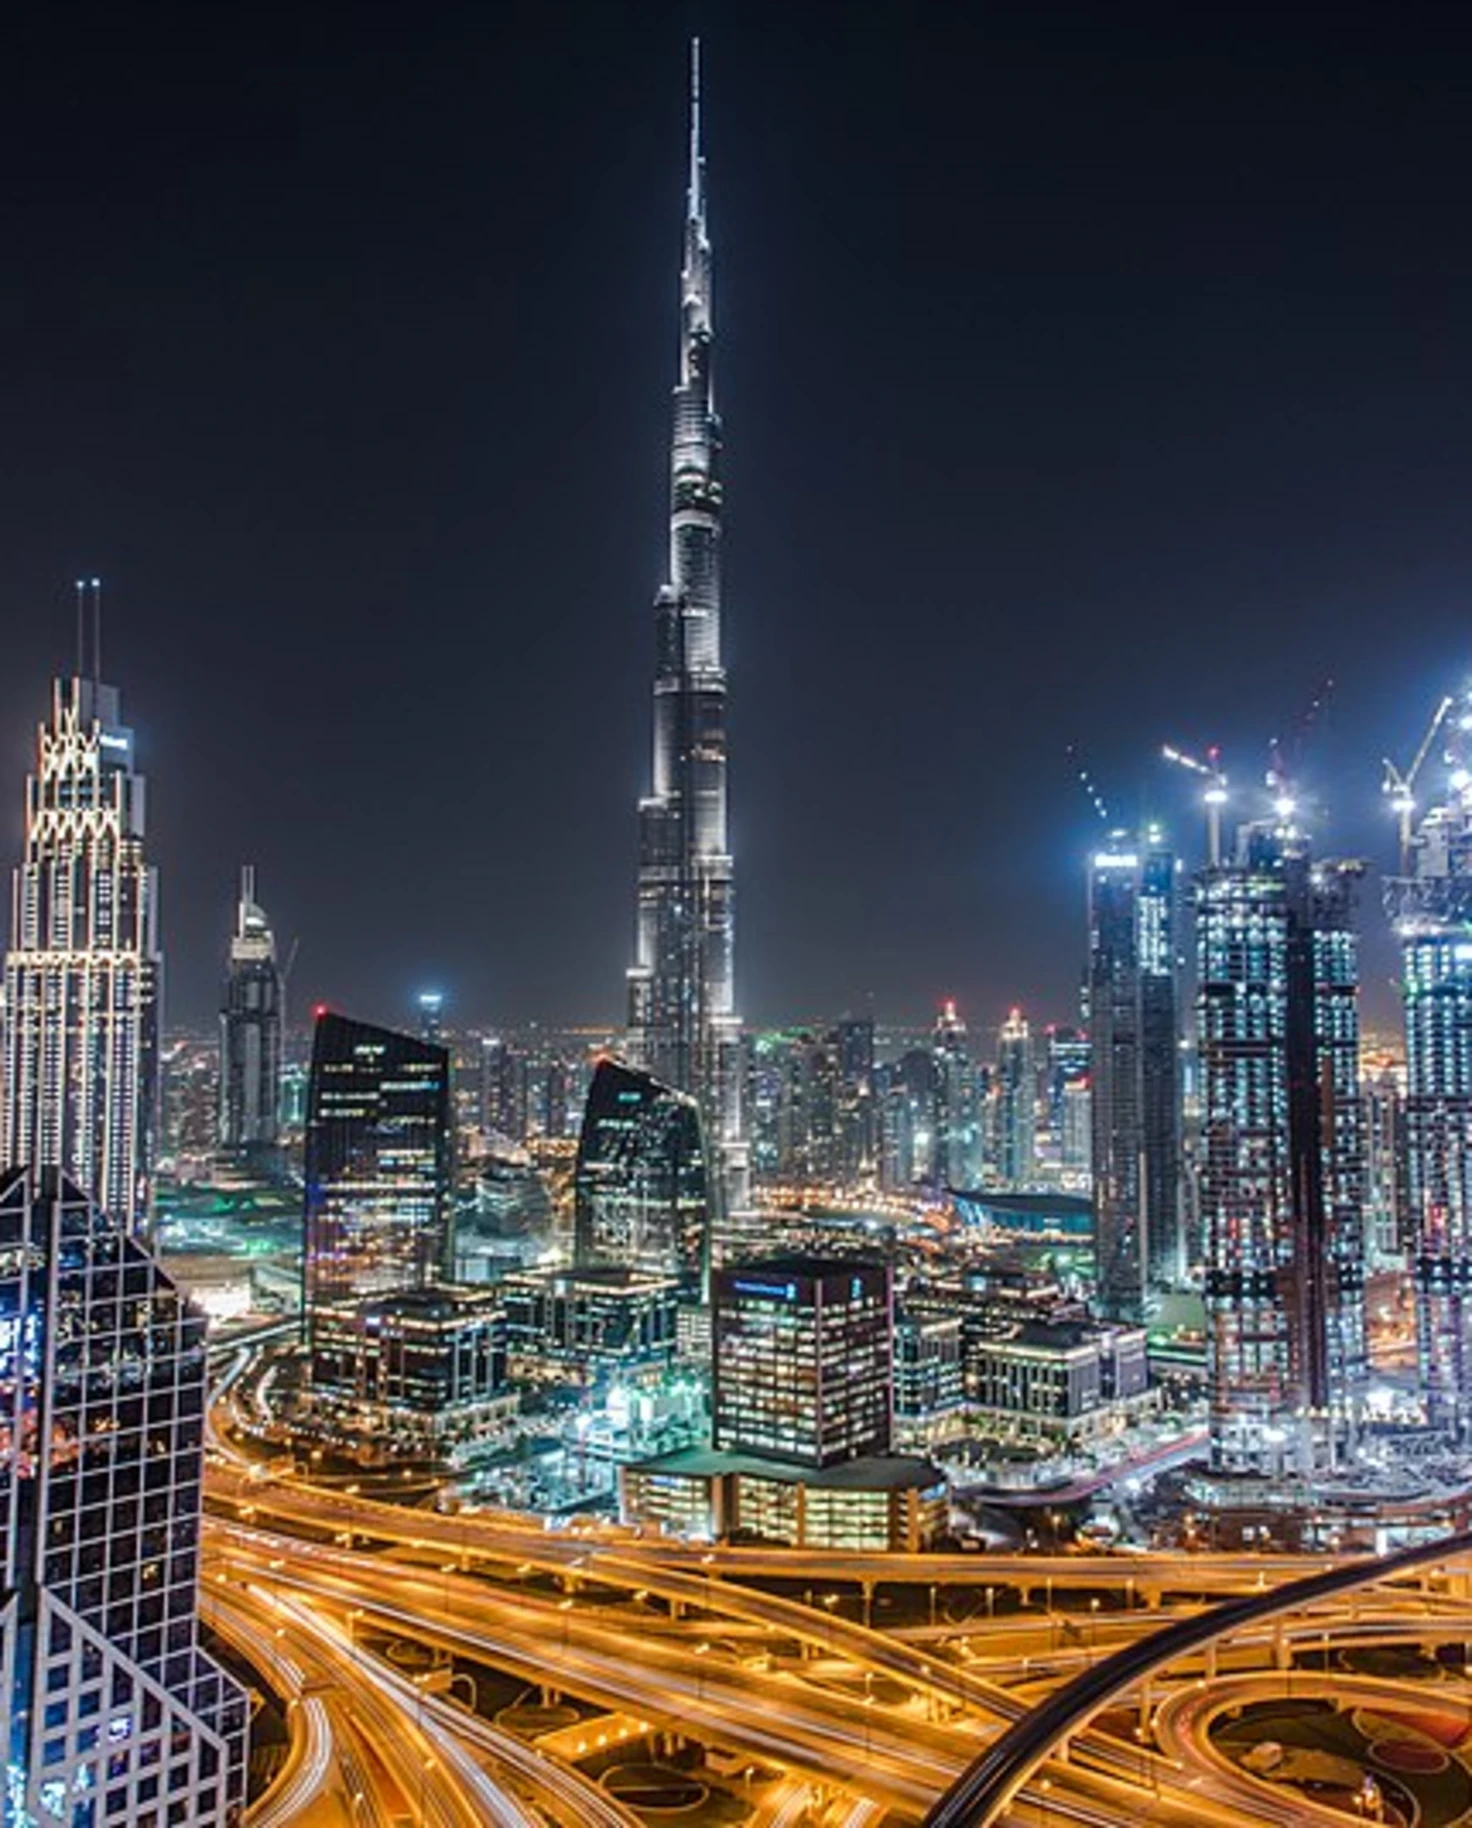 Dubai skylines at night view city